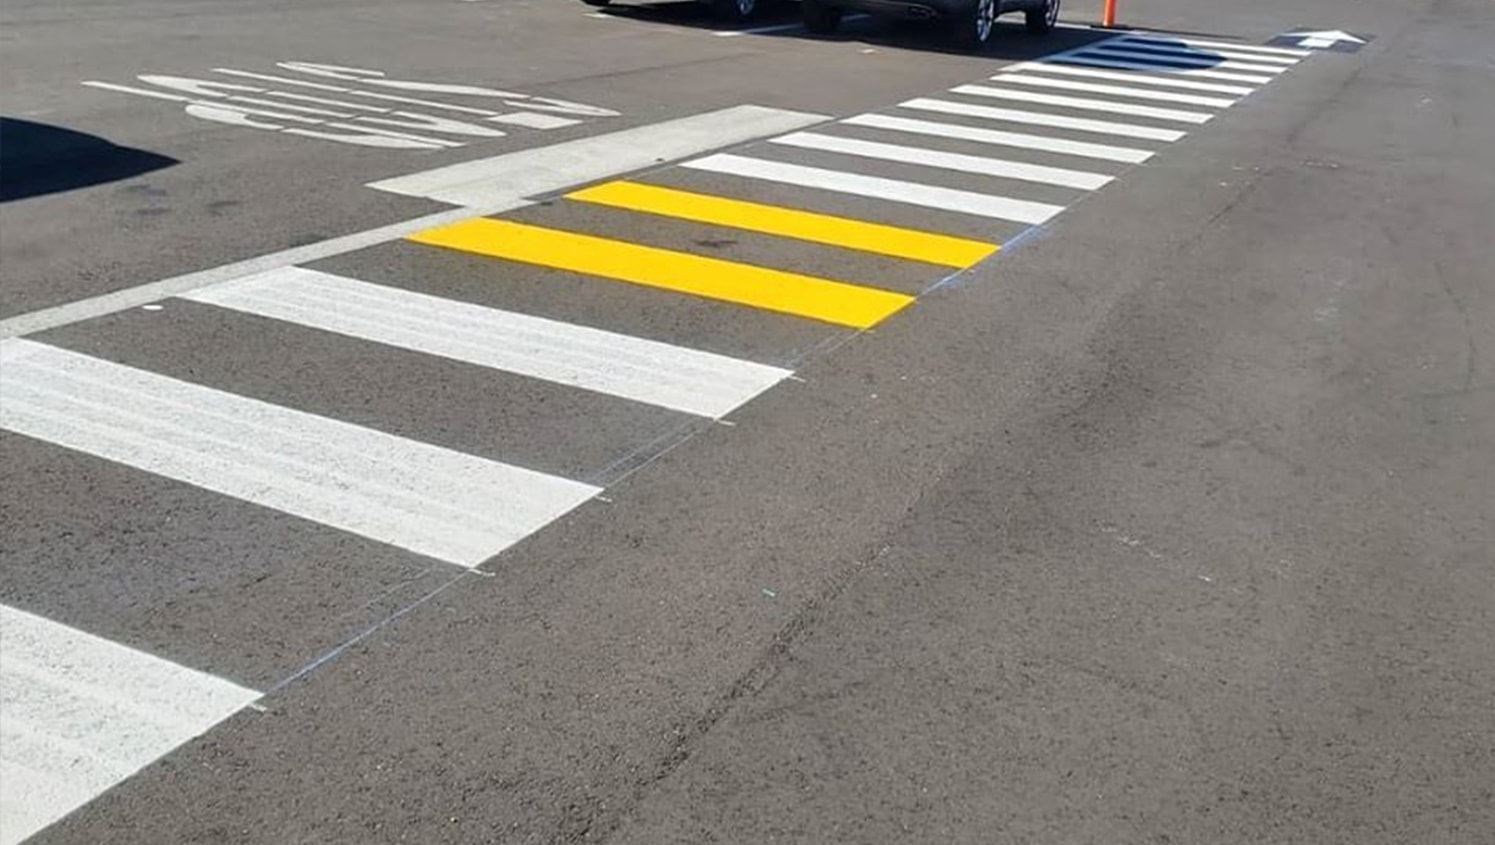 stop stencil with crosswalk markings